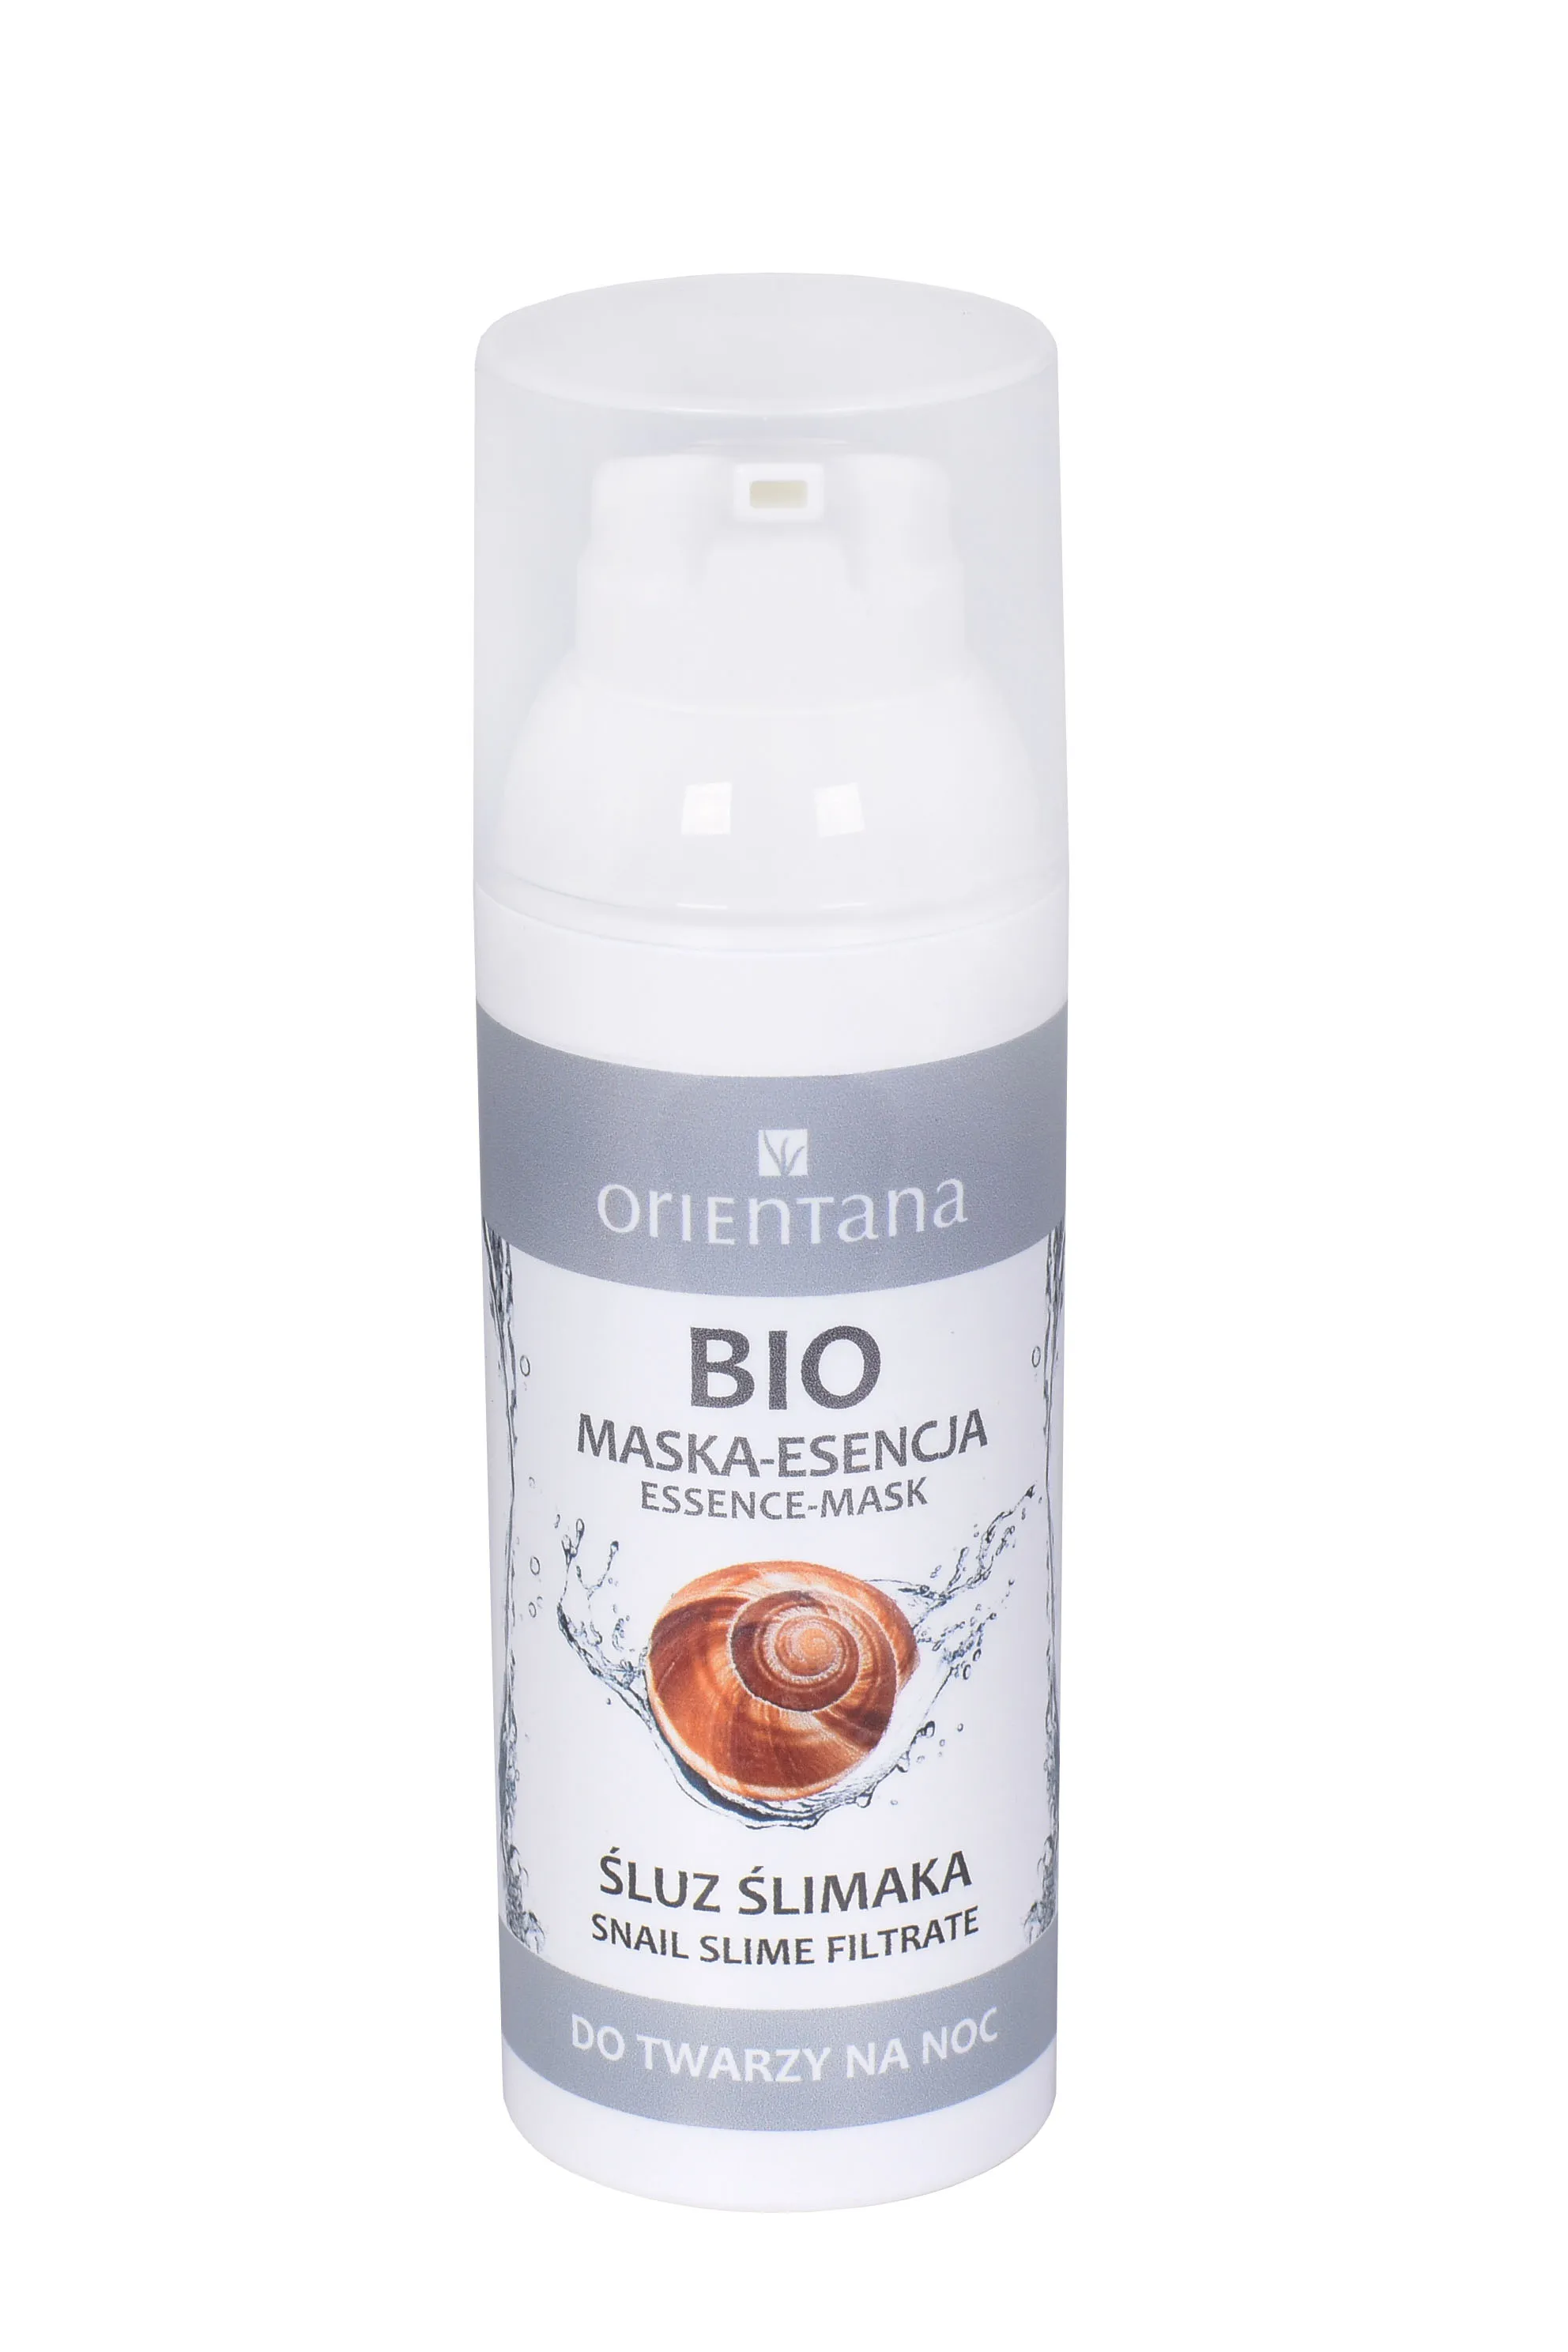 Orientana Bio, maska-esencja śluz ślimaka, 50 ml 